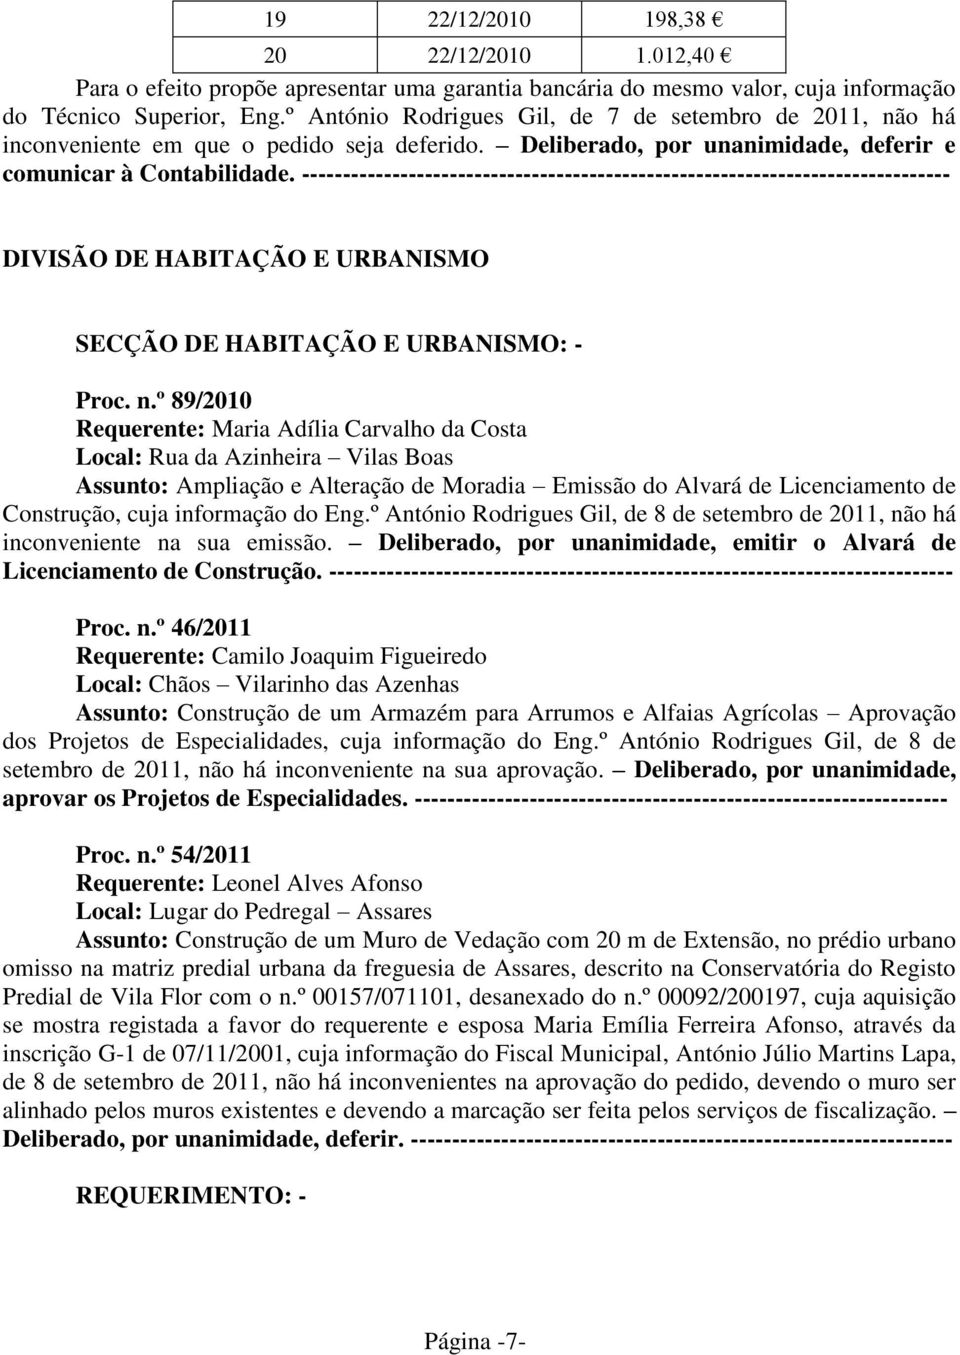 Eng.º António Rodrigues Gil, de 8 de setembro de 2011, não há inconveniente na sua emissão. Deliberado, por unanimidade, emitir o Alvará de Licenciamento de Construção.